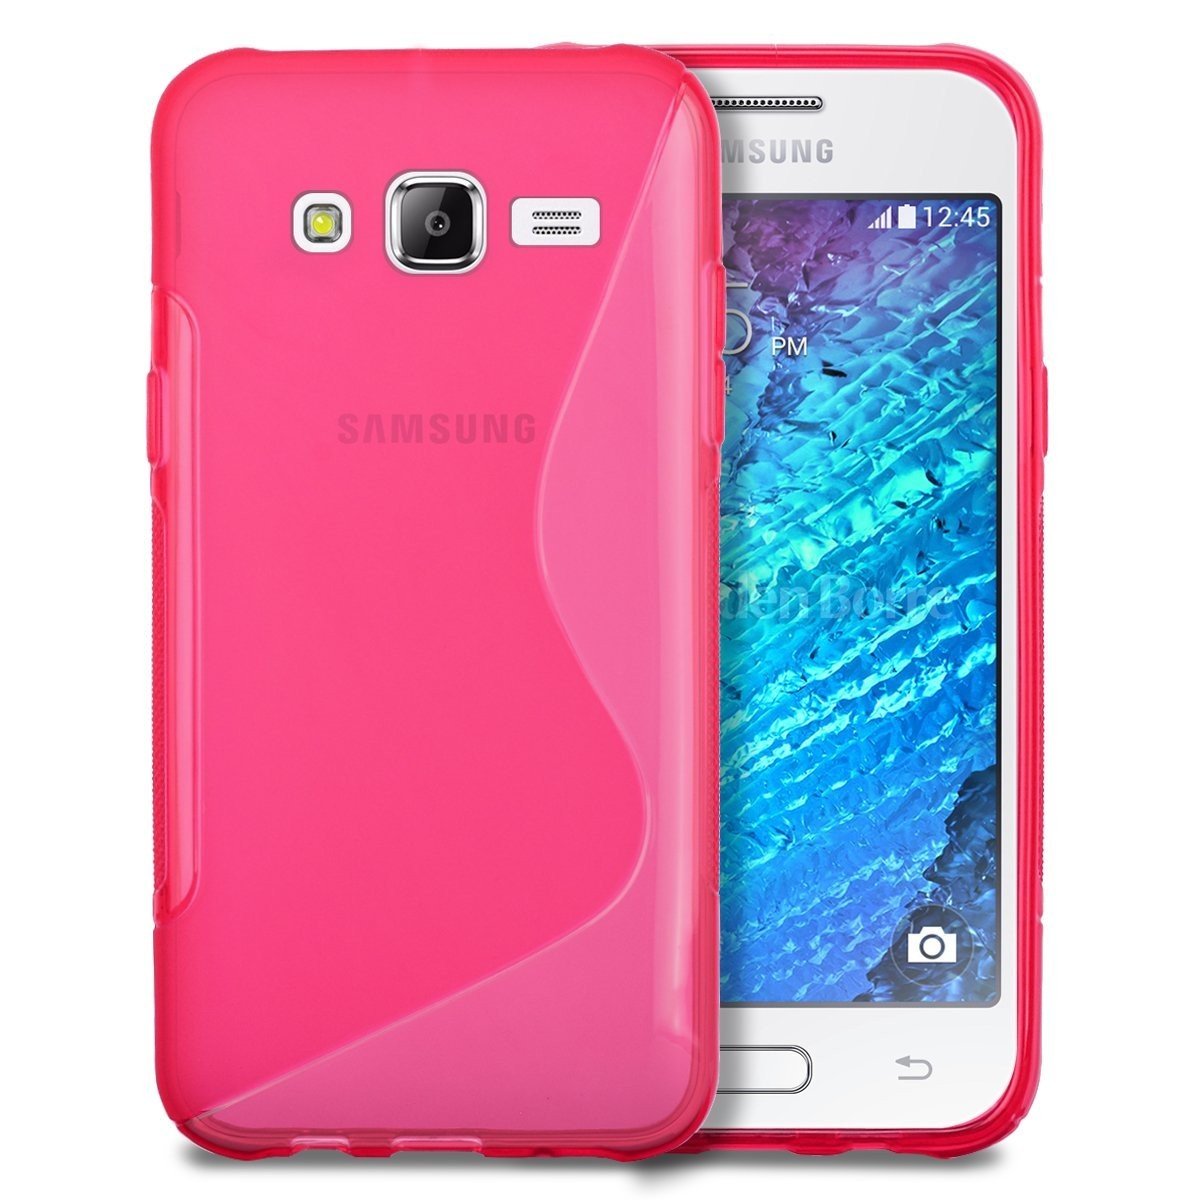 Hoesje Galaxy J5 TPU case roze kopen? | MobileSupplies.nl